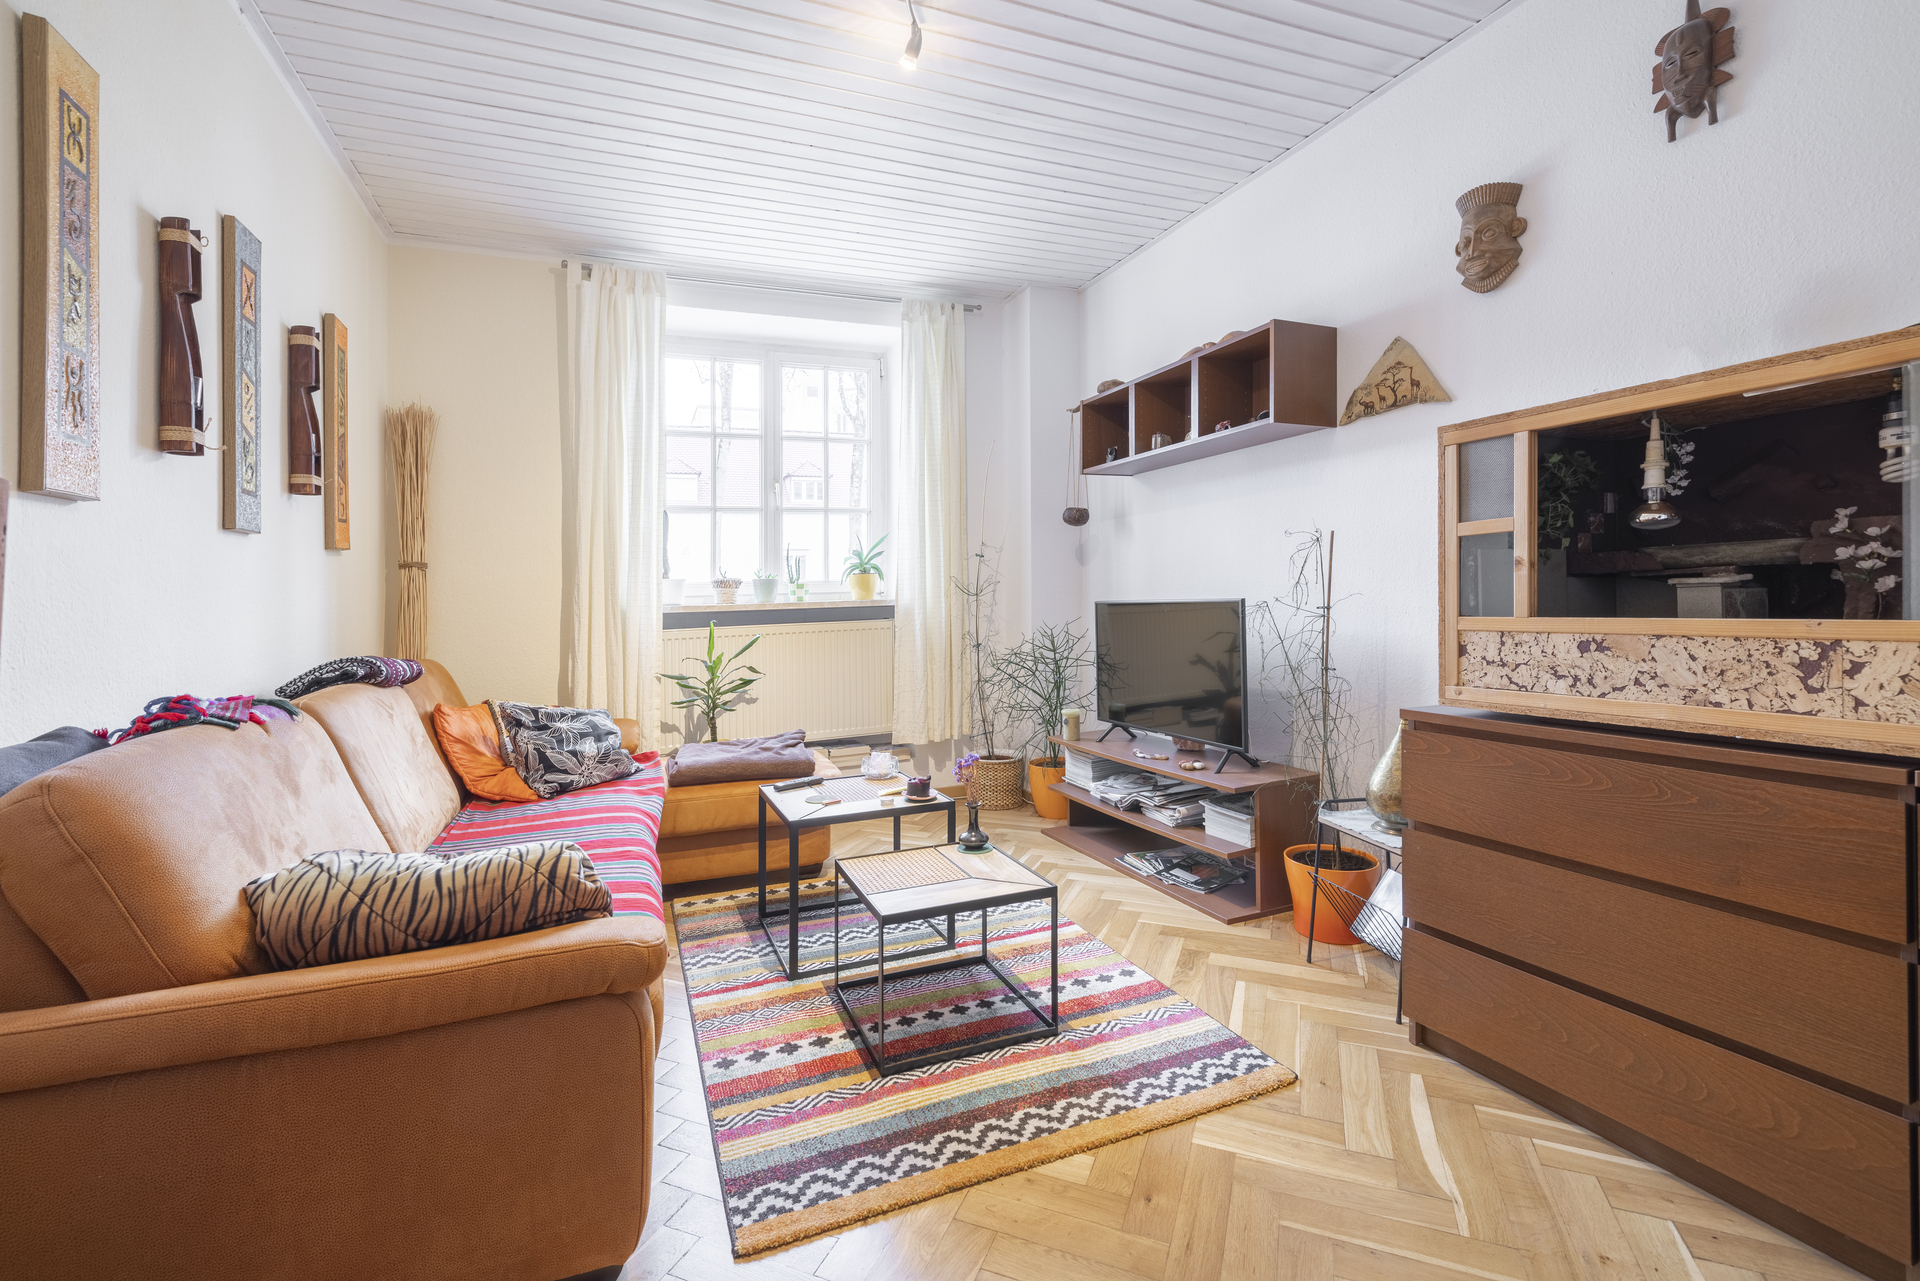 Vermietete 2-Zimmer Wohnung im denkmalgeschützten Ensemble in Thalkirchen - Wohnzimmer mit edlem Fischgrätparkett